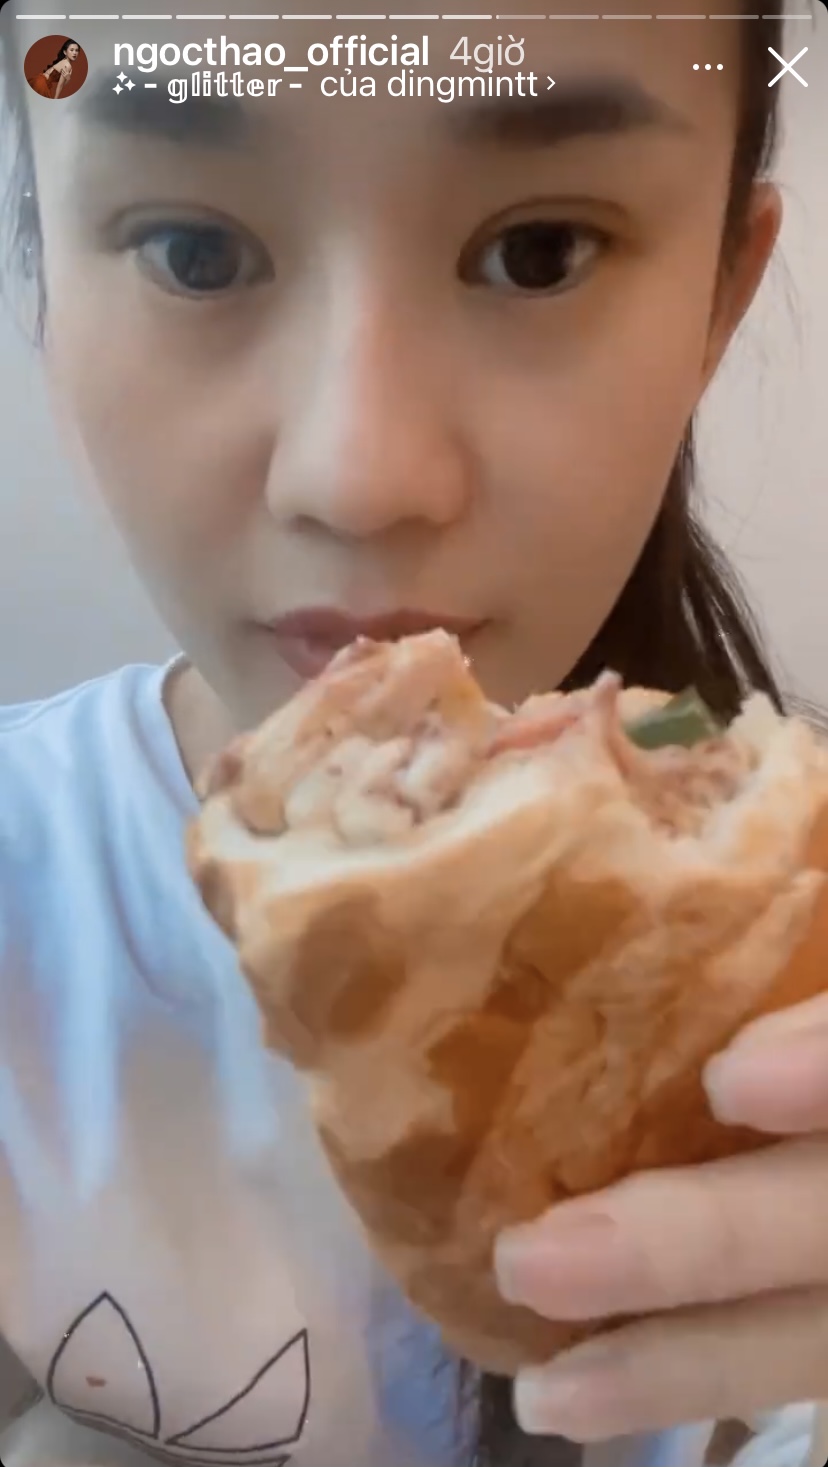 Cũng giống như Tăng Thanh Hà hay Tóc Tiên, hotgirl Ngọc Thảo hôm nay cũng được thưởng thức chiếc bánh mì 'ngập topping'.